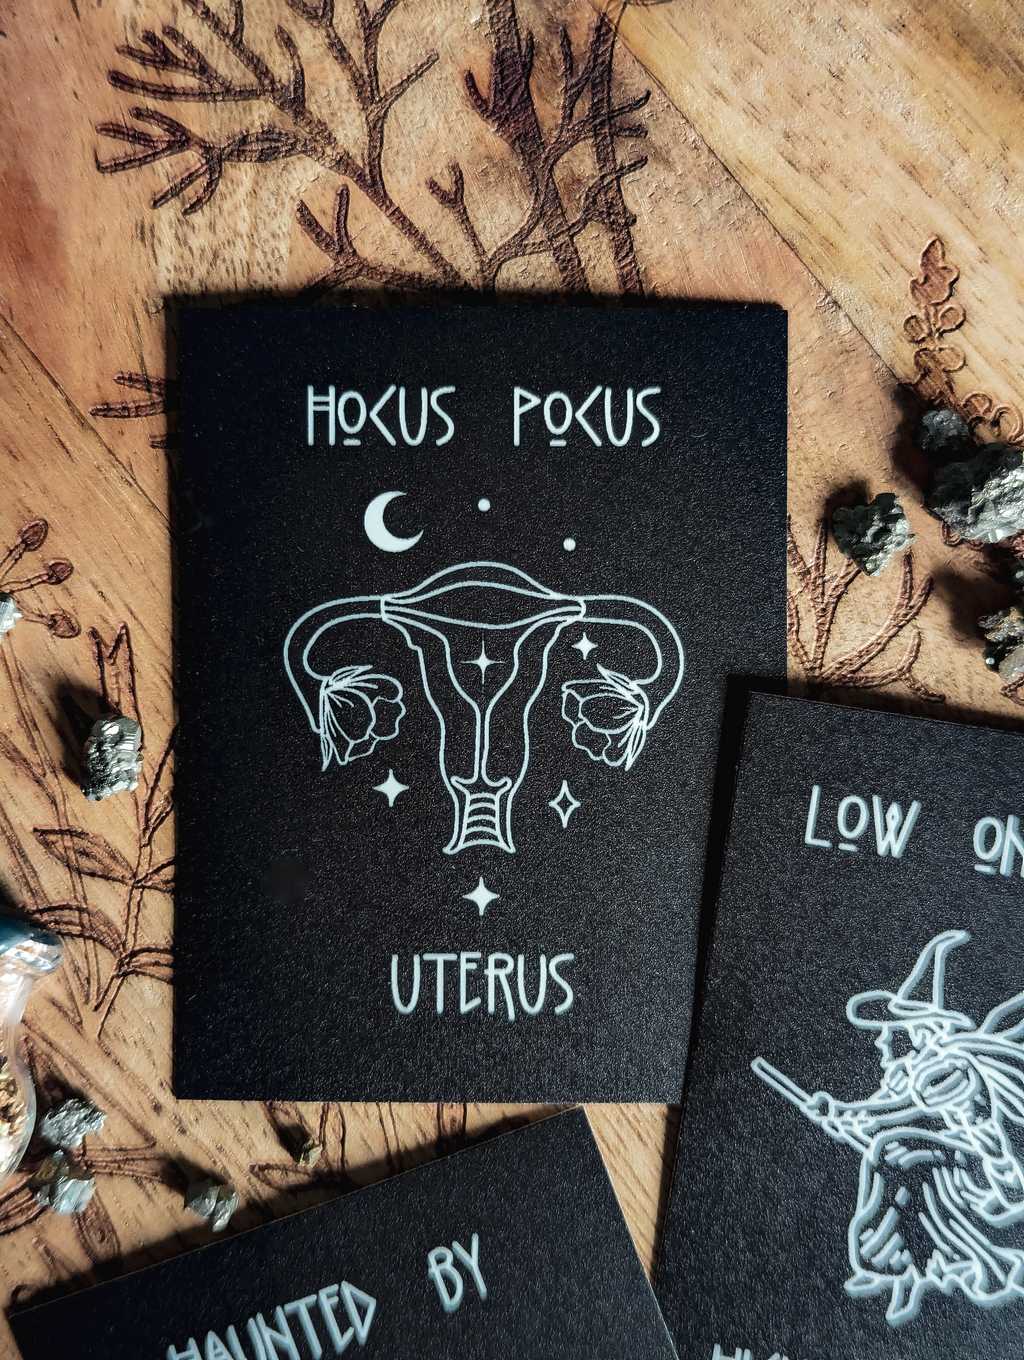 Auf einem Holzbrett liegt ein mattschwarzer Sticker. In weißer Farbe ist ein Uterus mit Blüten, Sternen und Mond zu sehen. Dazu der Spruch: Hocus Pocus Uterus